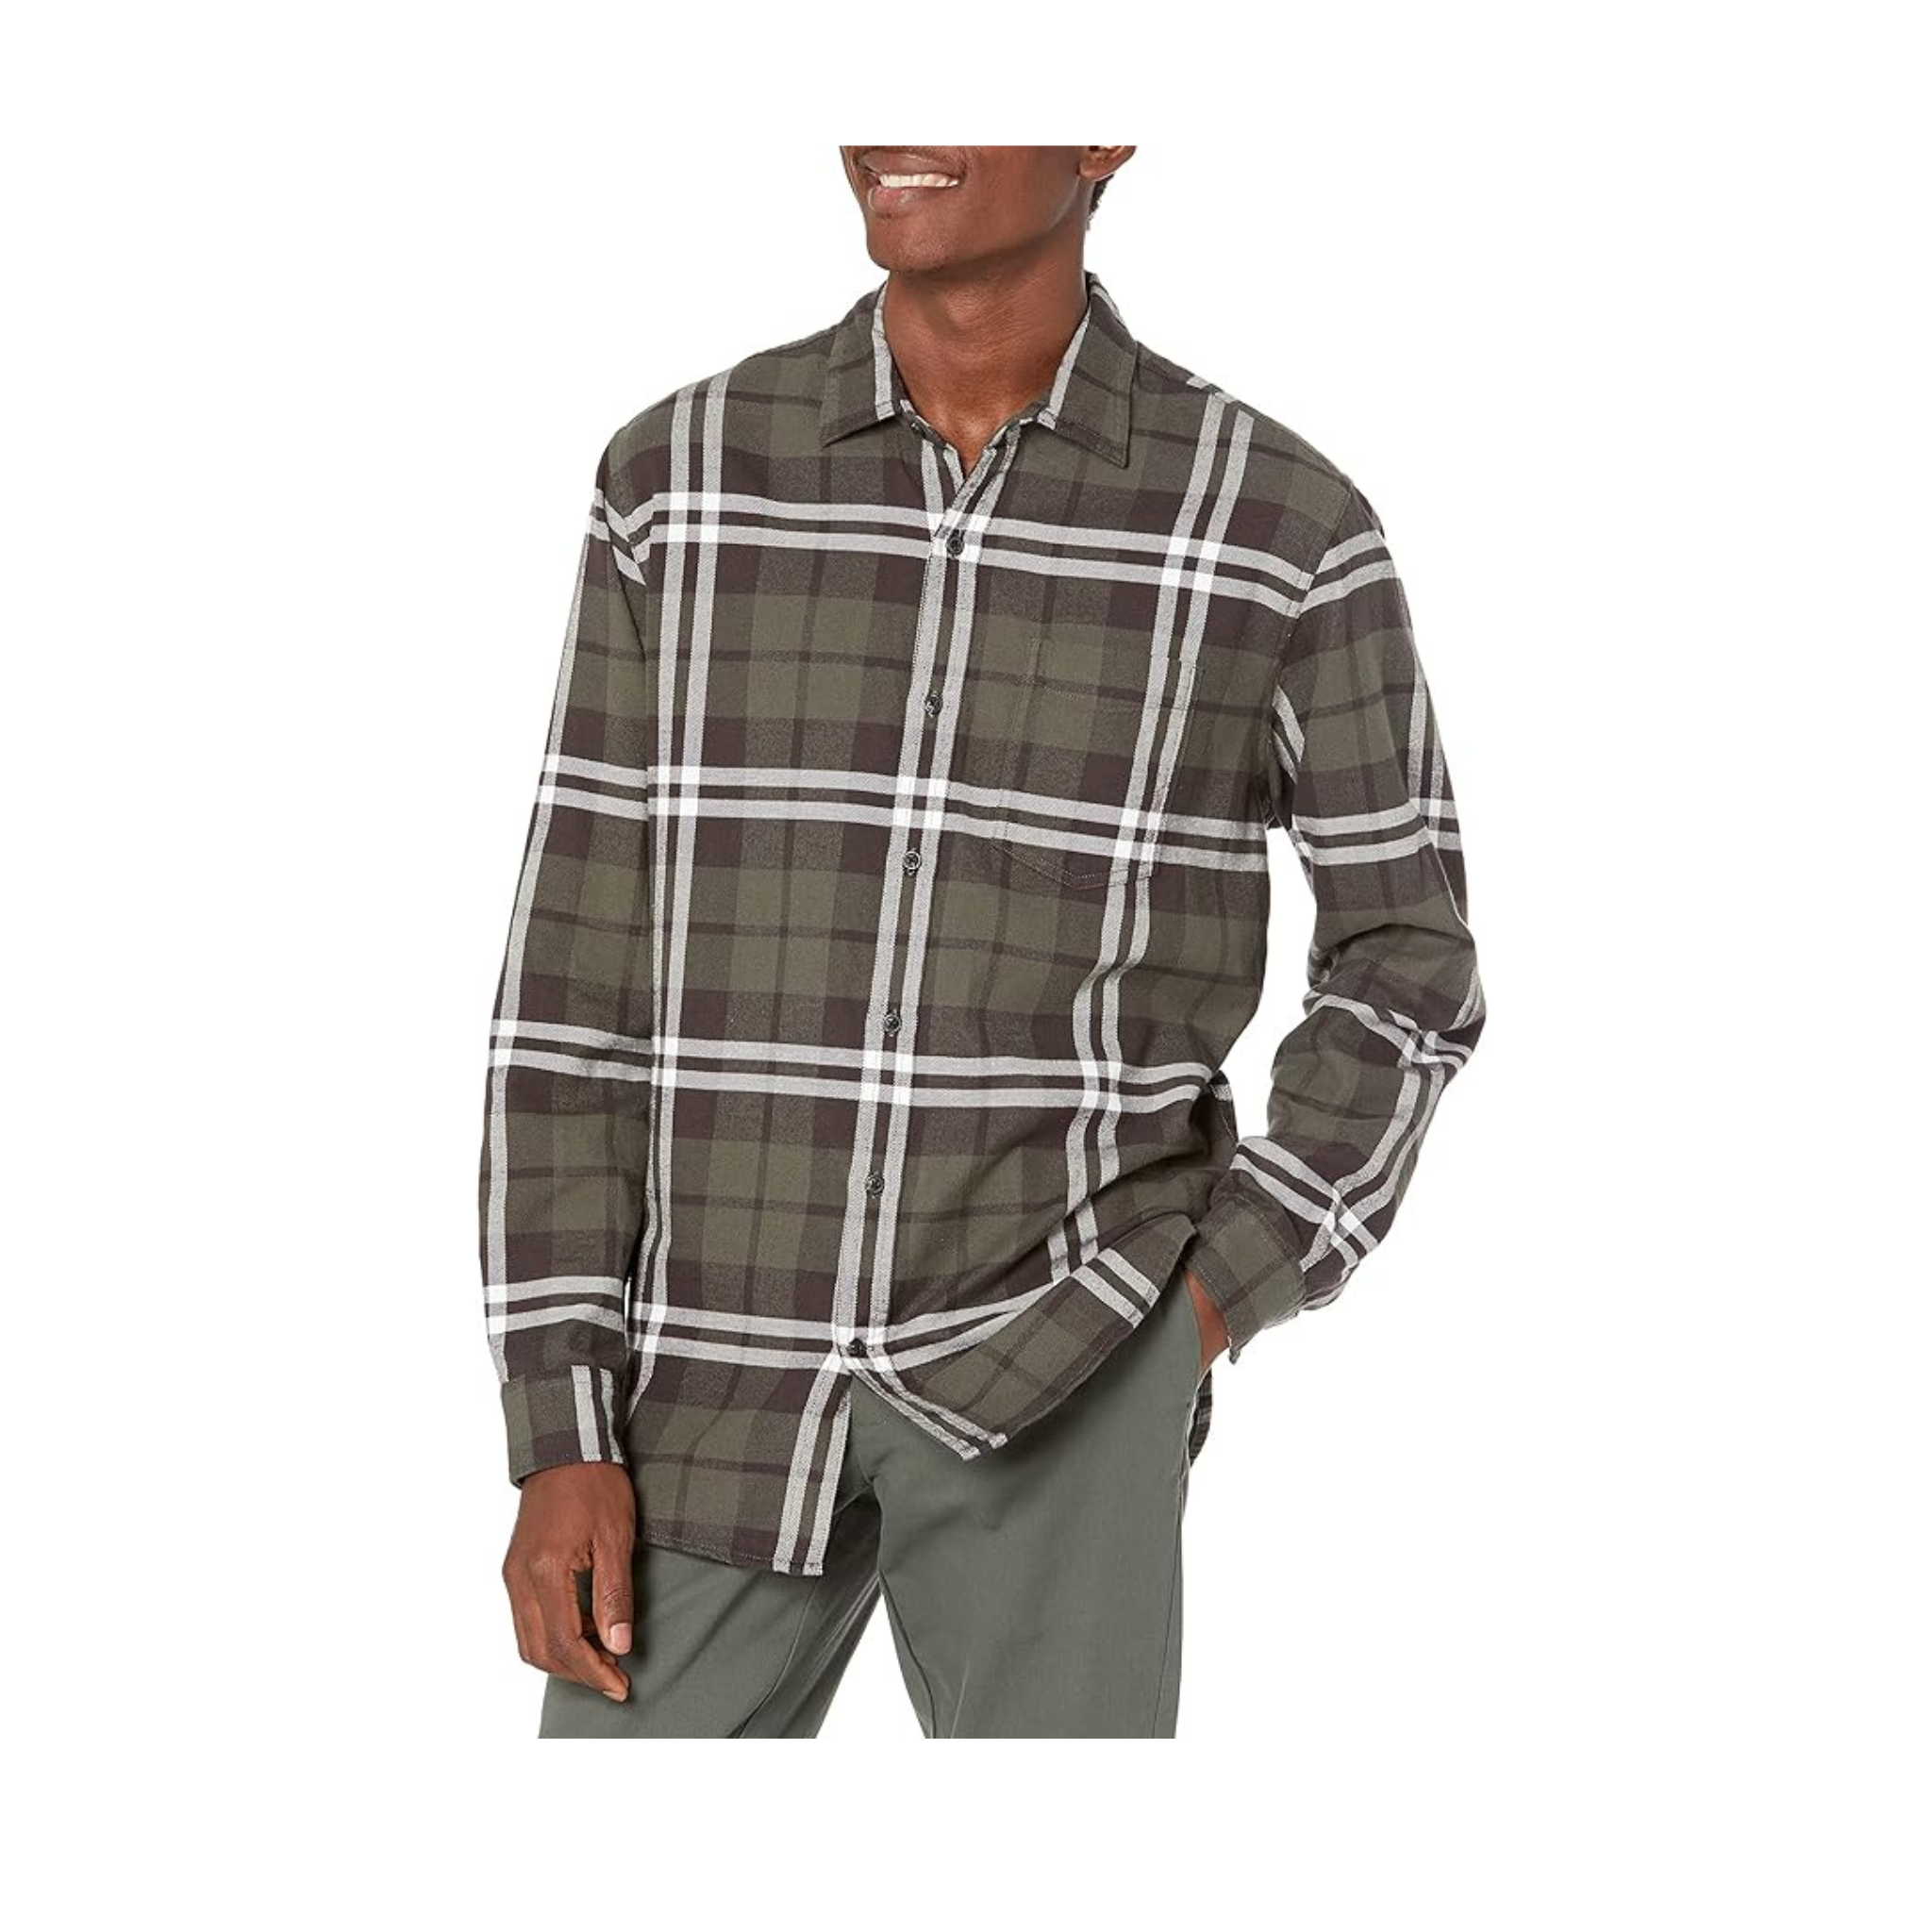 Amazon Essentials 100% Cotton Men's Long-Sleeve Flannel Shirt (various colors)